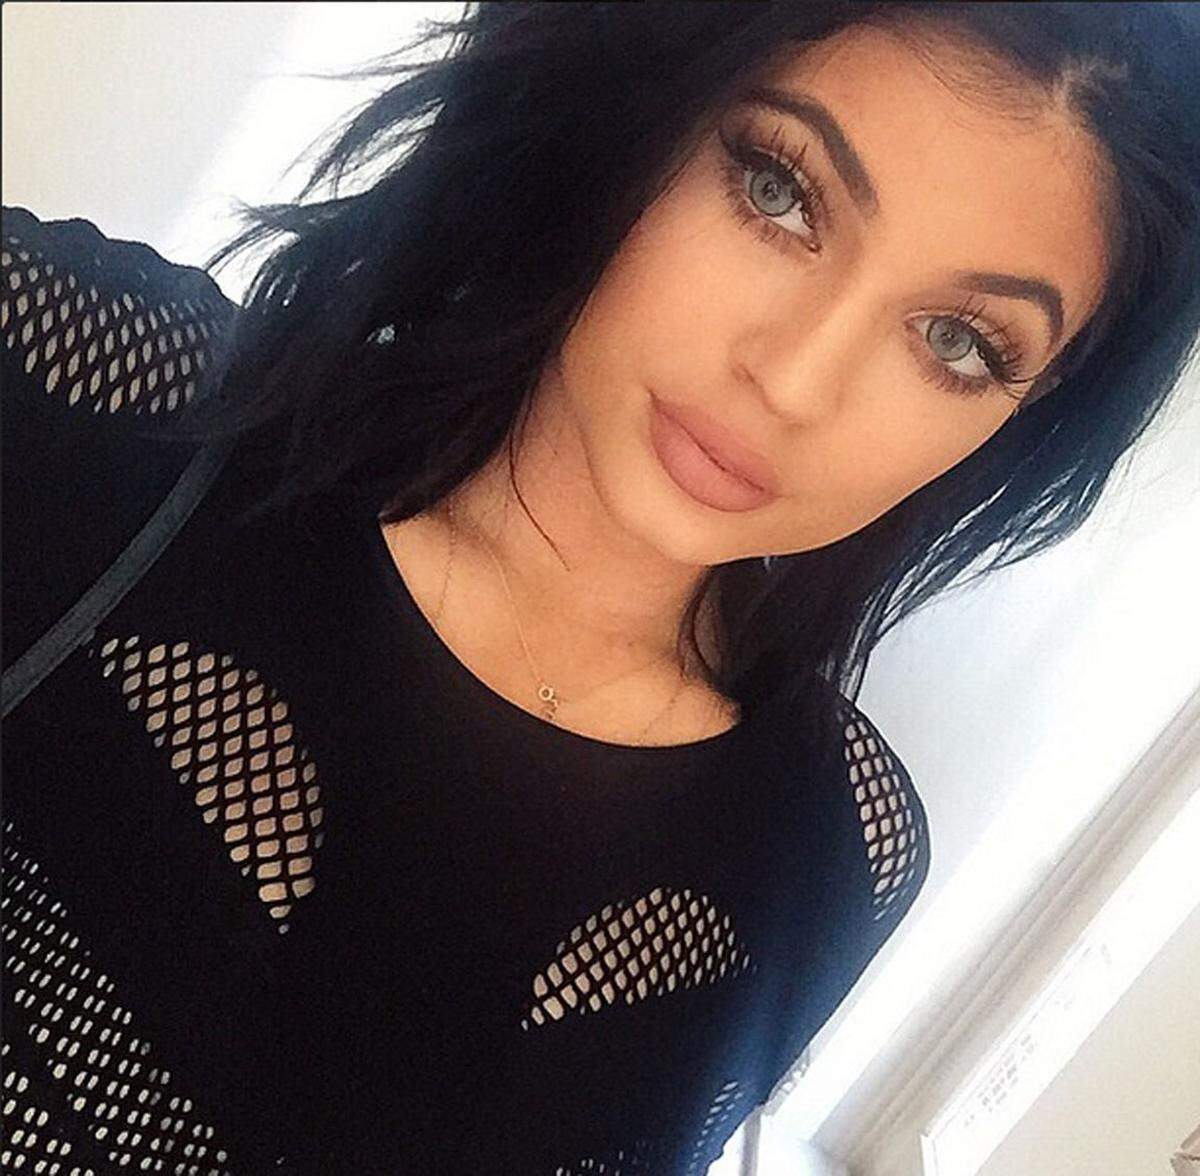 Unter dem Hashtag #KylieJennerChallenge versuchen sich vor allem Jugendliche im Web um einen Schmollenmund à la Kylie Jenner. Die Schwester von Kim Kardashian hat angeblich nicht chirurgisch nachgeholfen, vielmehr handle es sich um eine Schminktechnik.